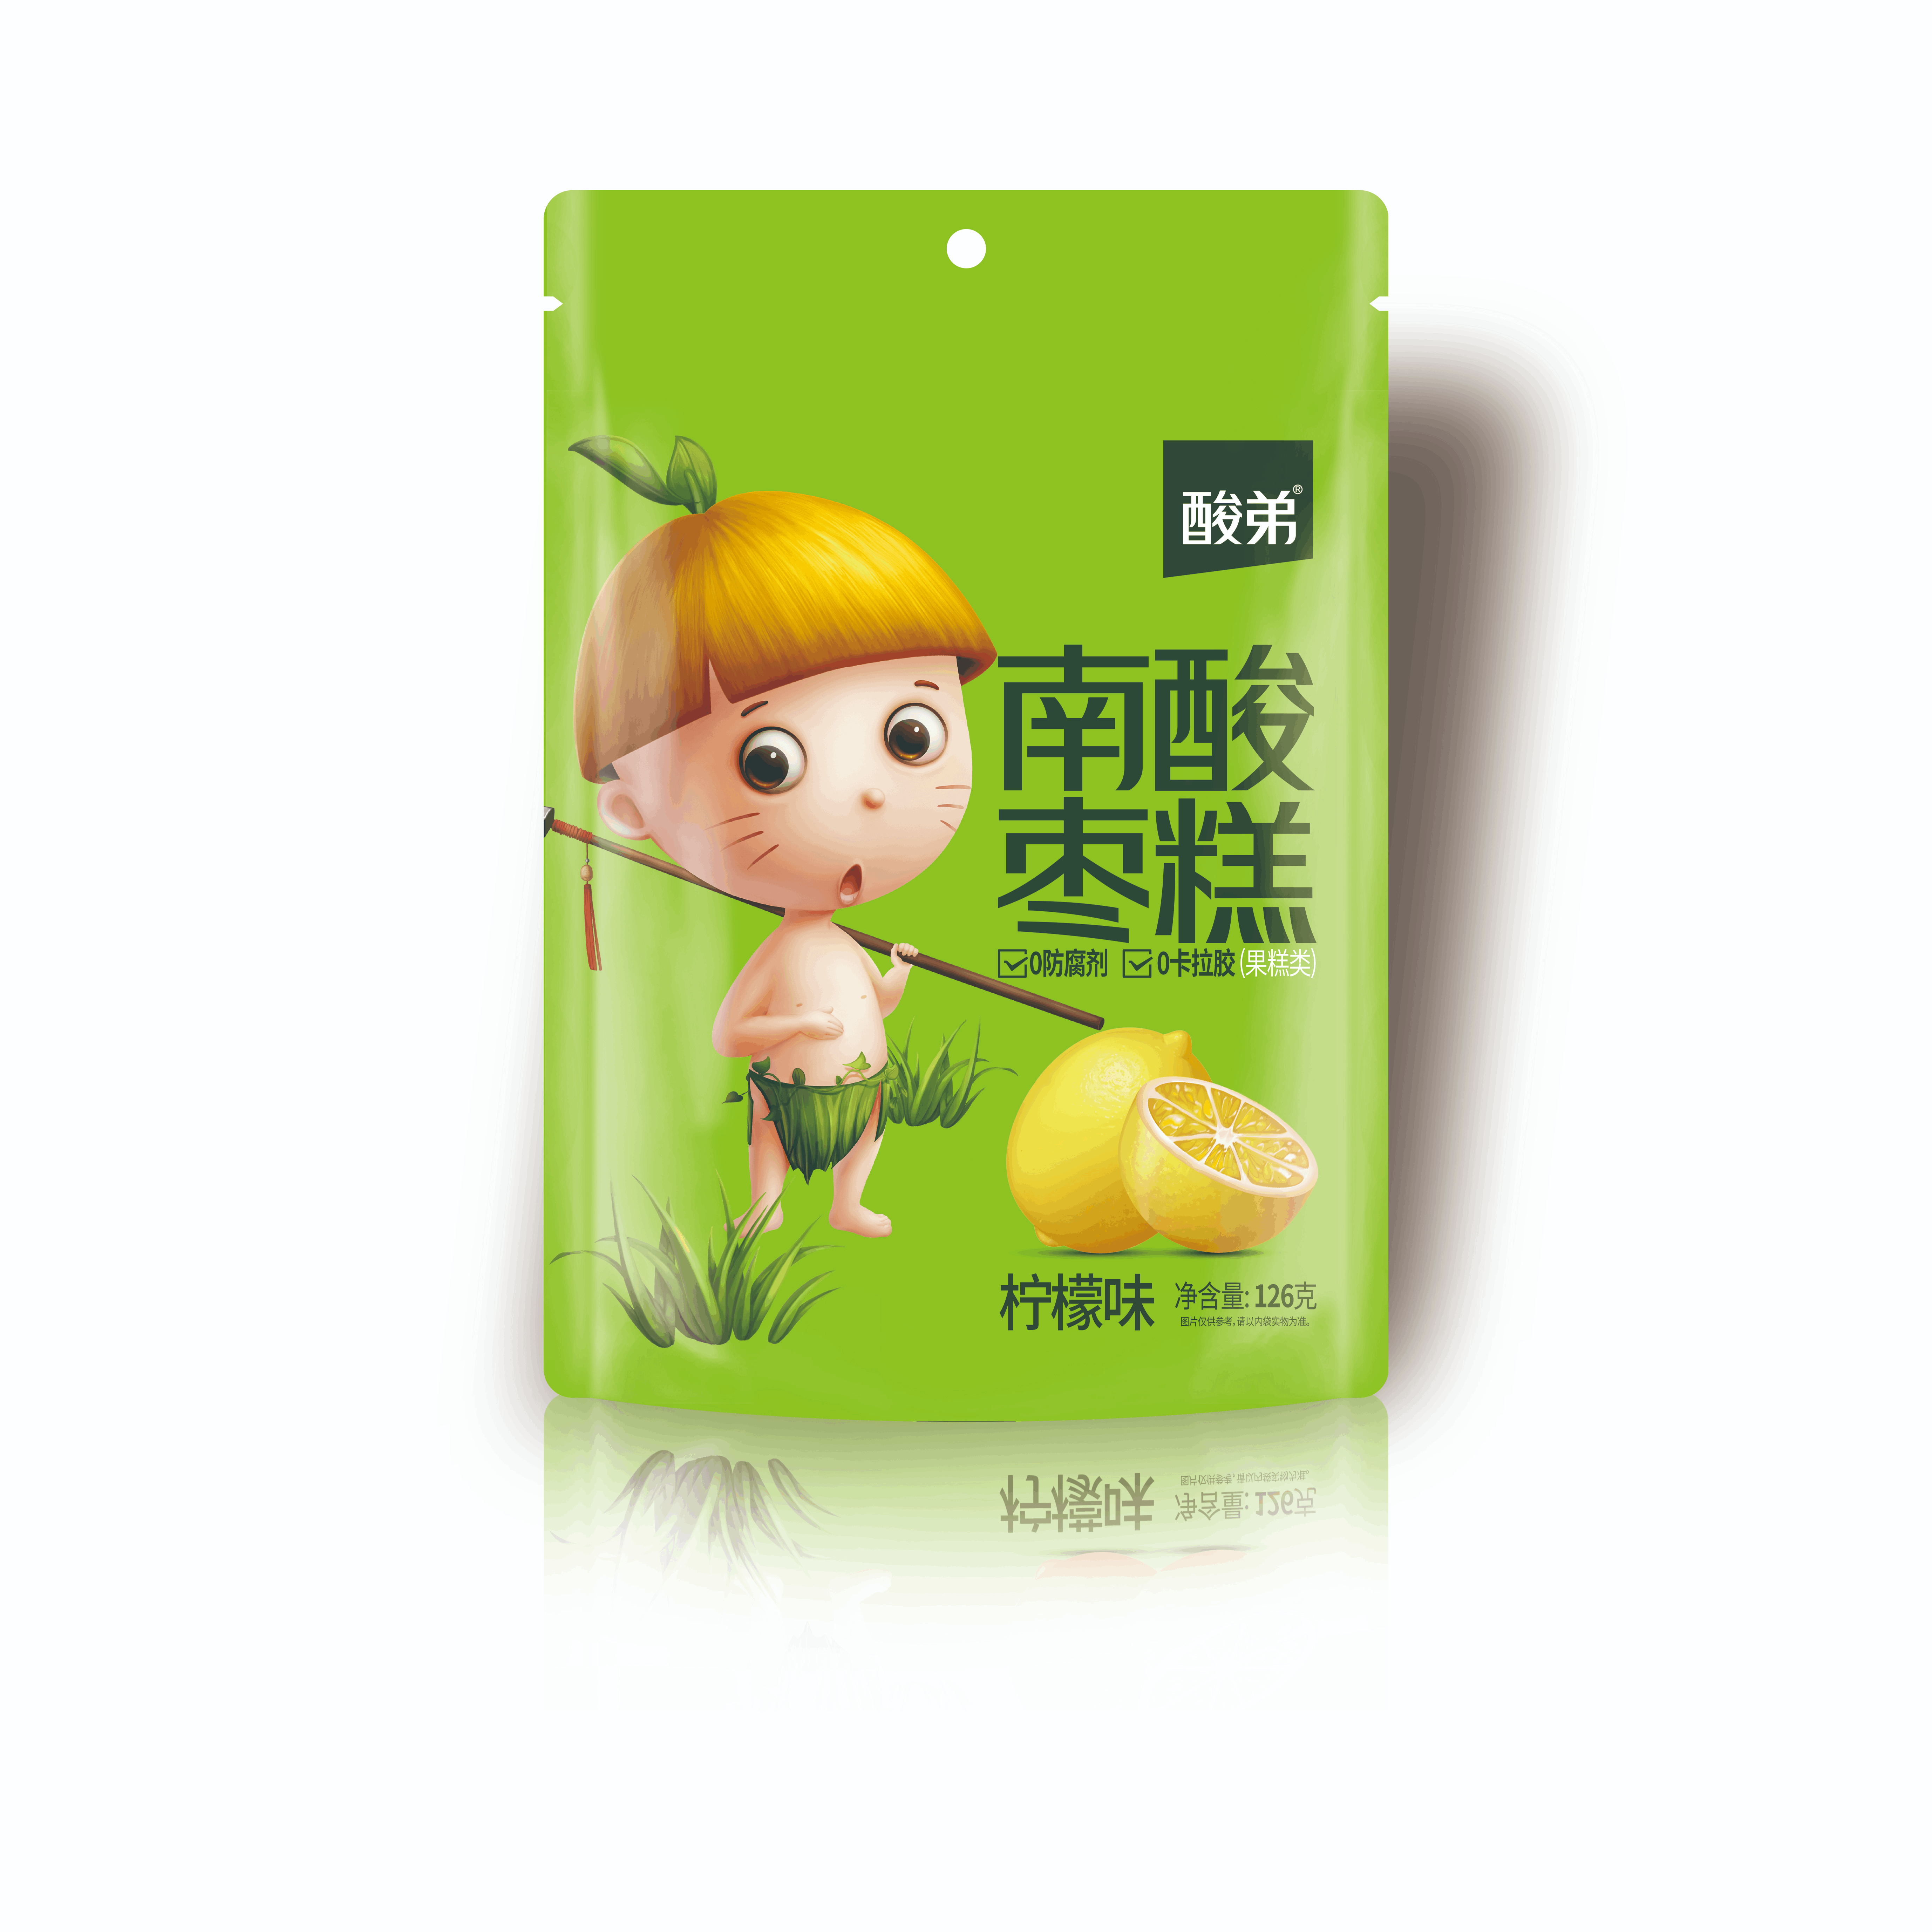 全网最大下注平台(中国)集团有限公司南酸枣糕柠檬味